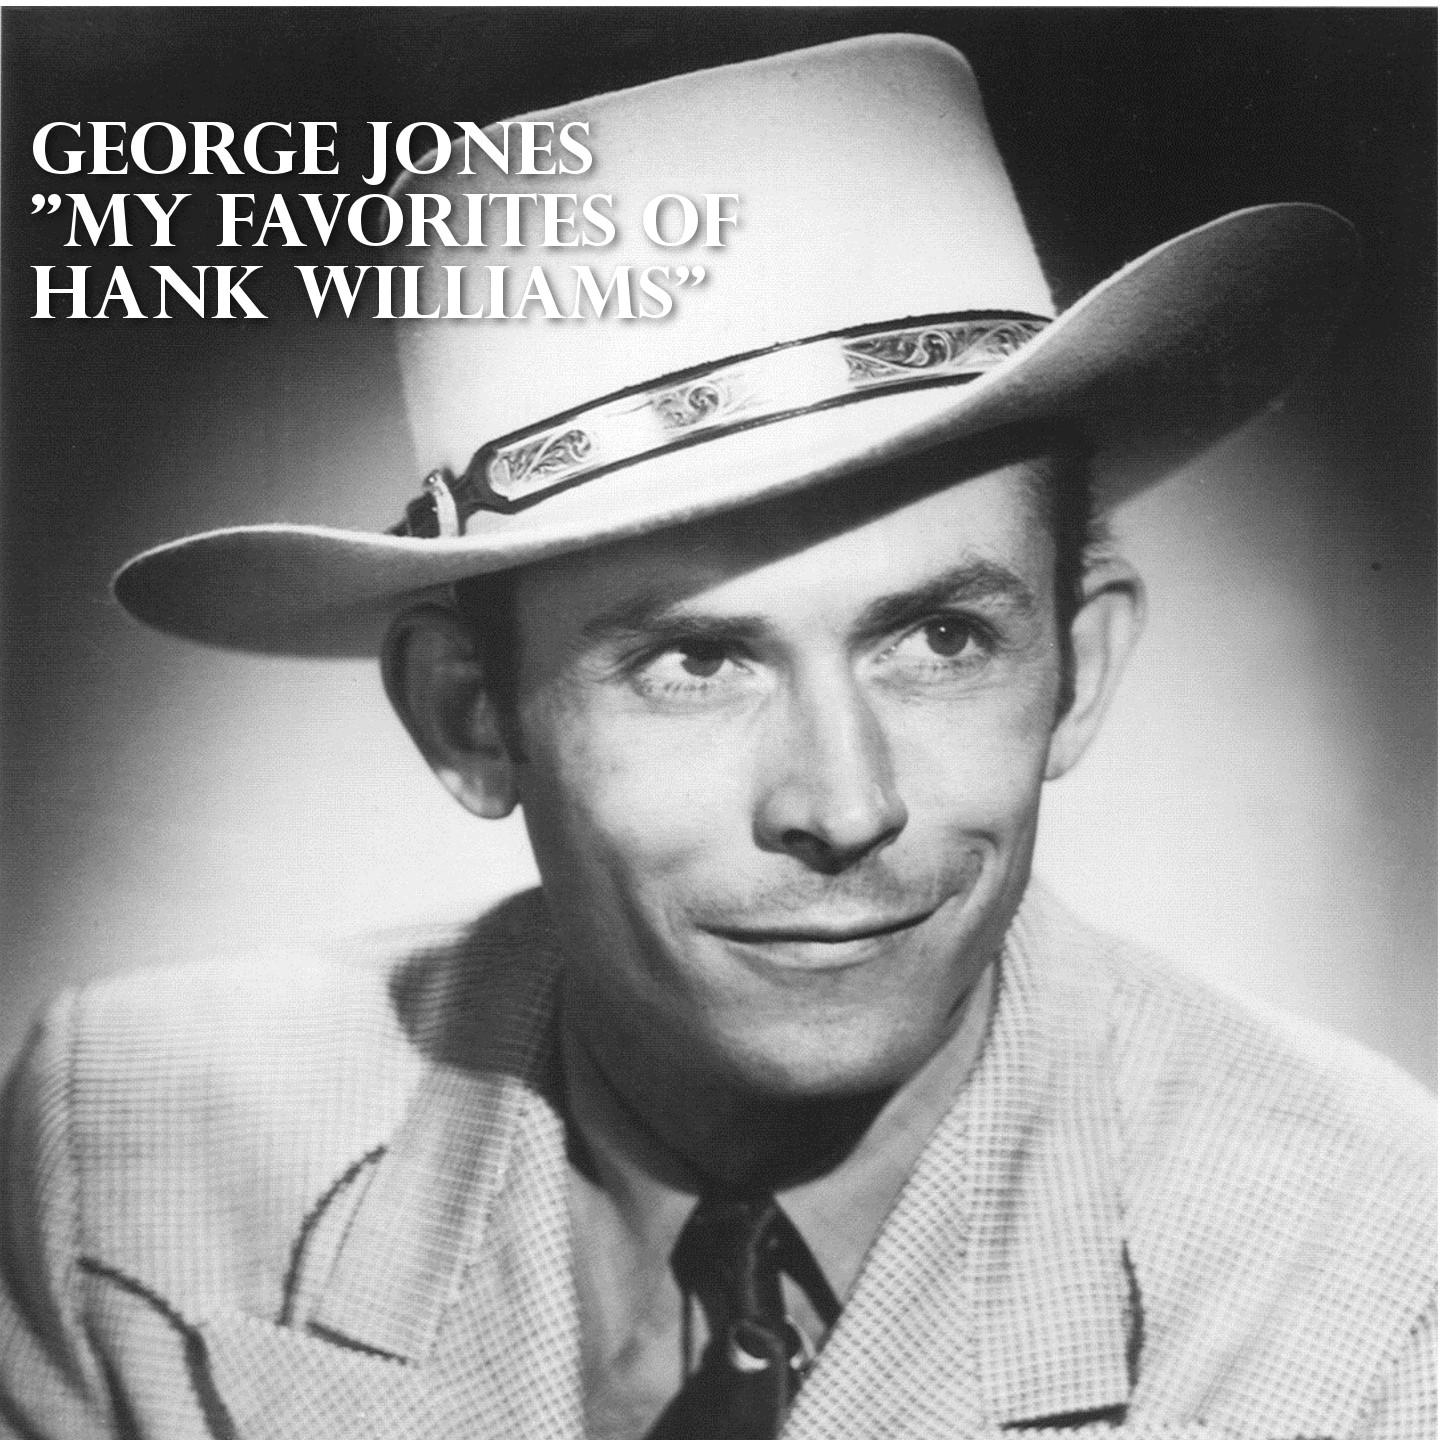 George Jones - My Favorites of Hank Williams